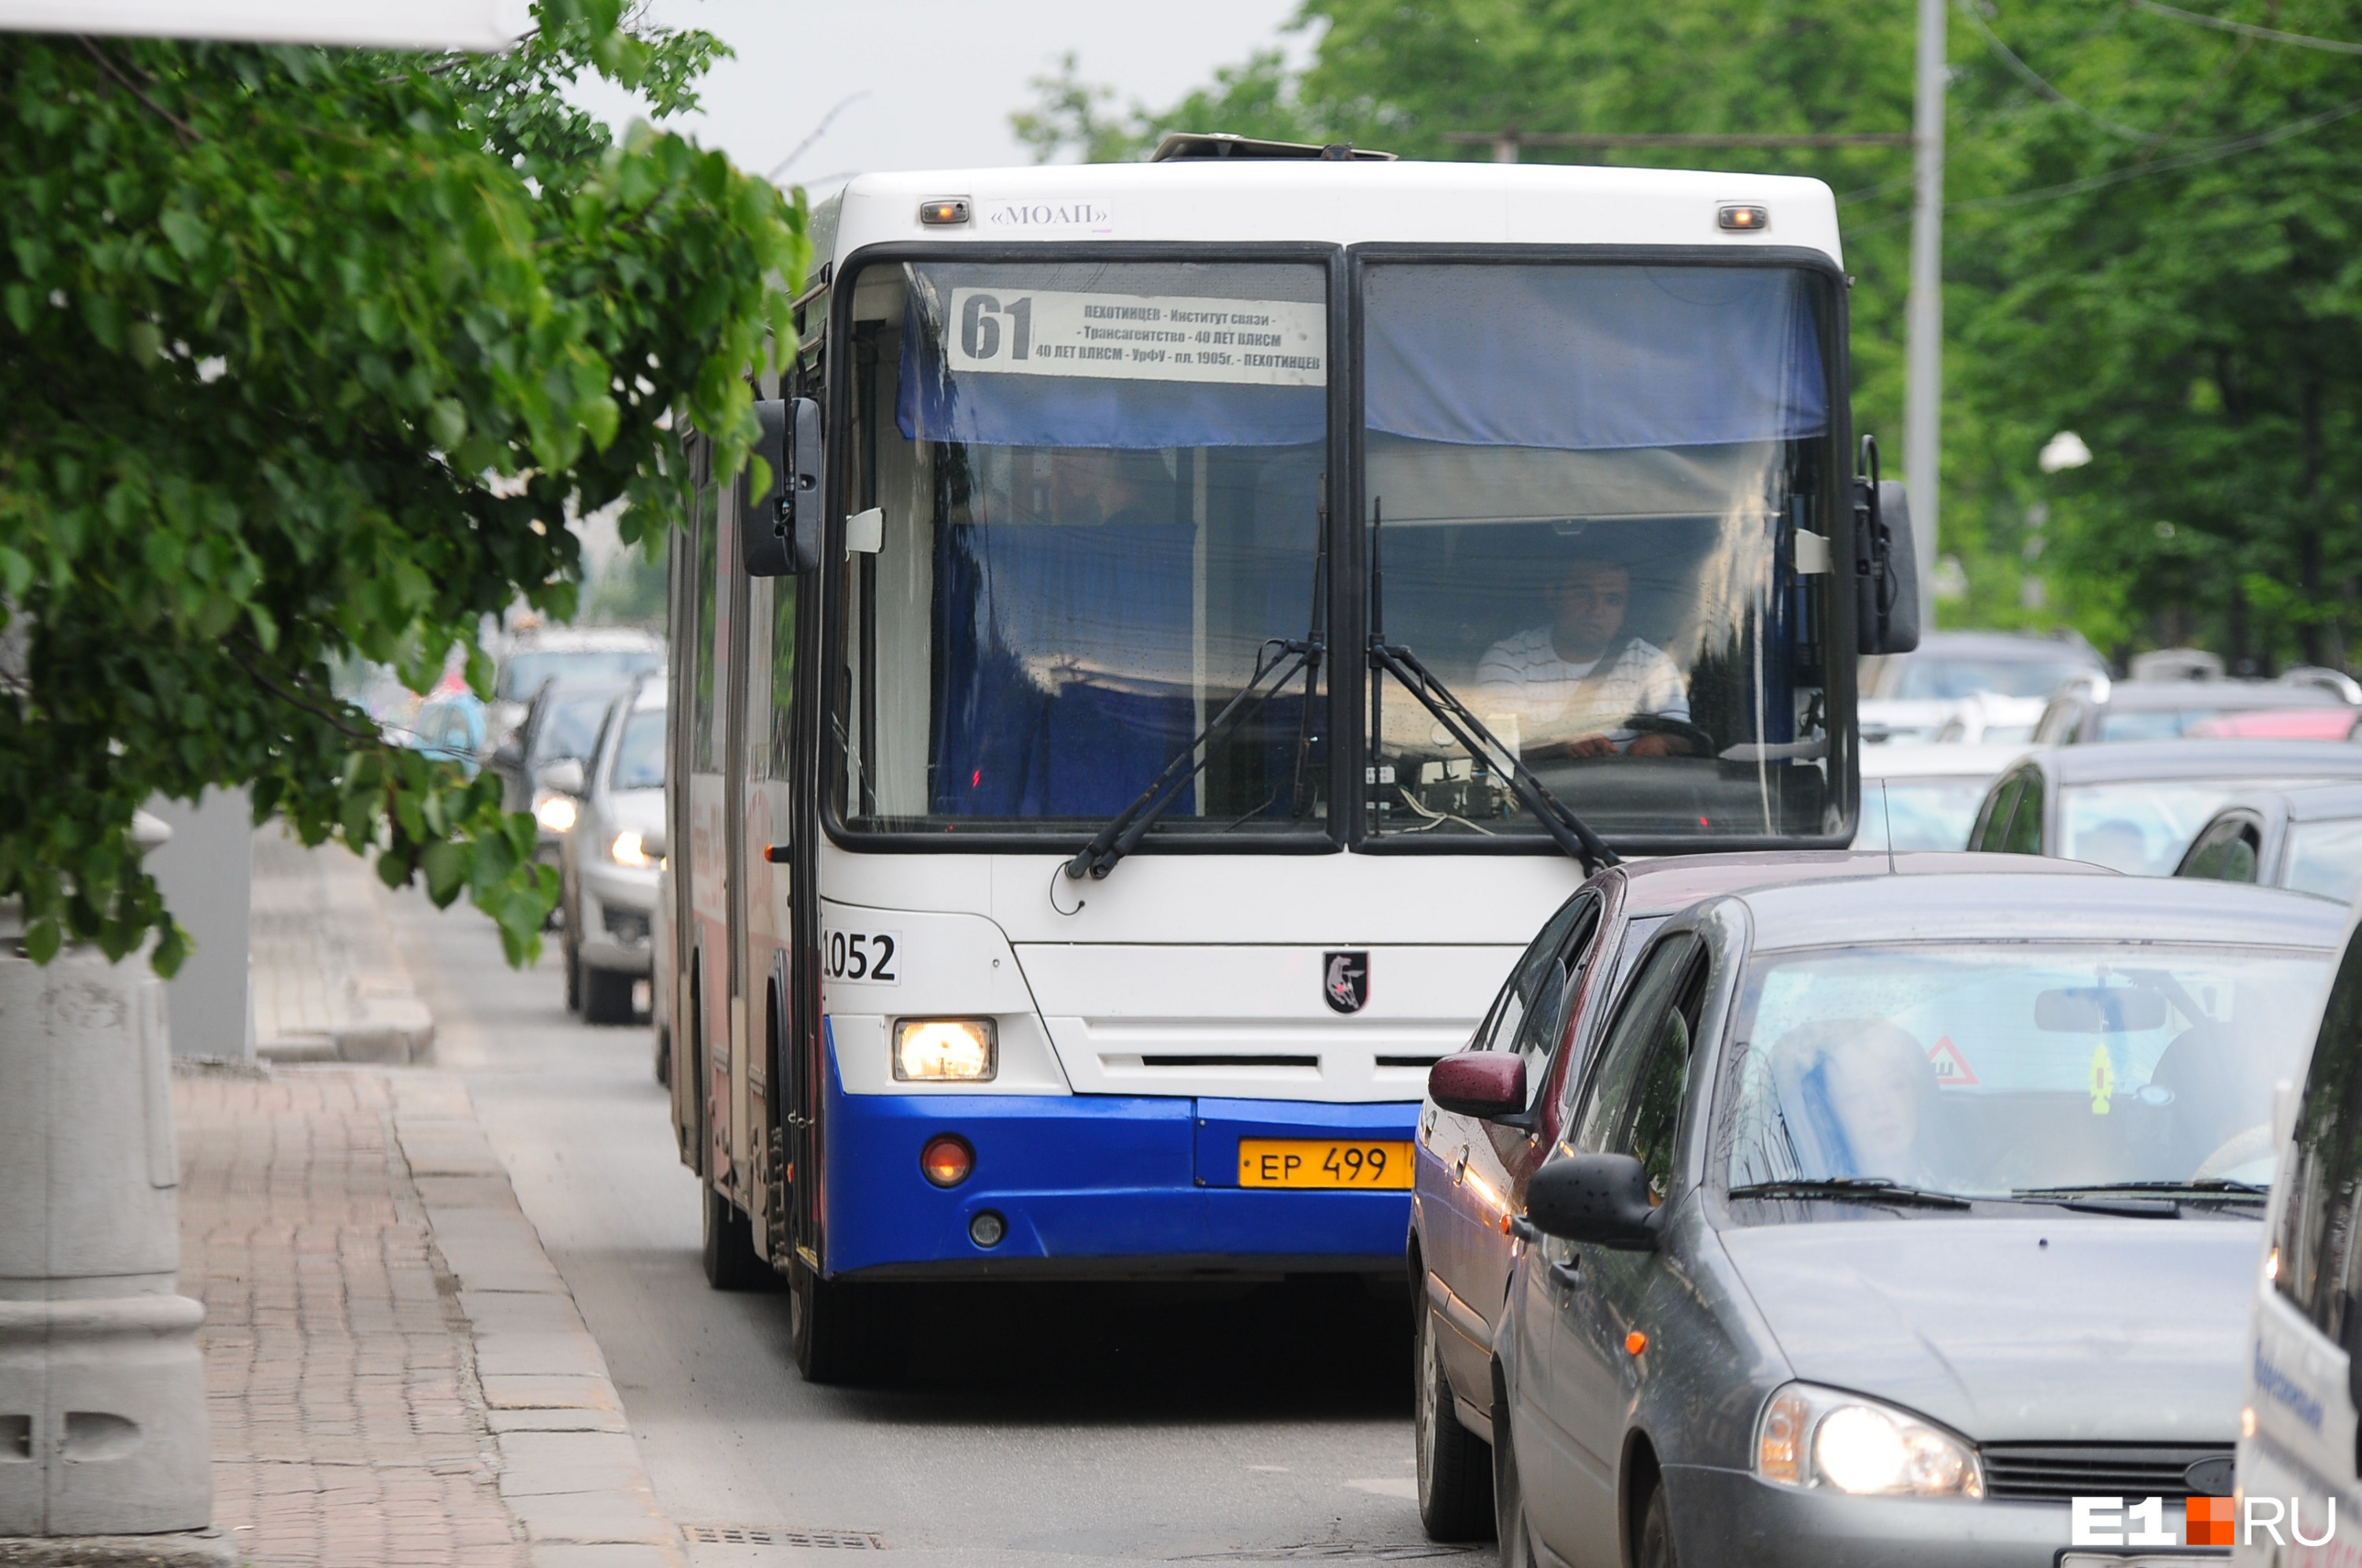 Автобусы — самый многочисленный вид общественного транспорта